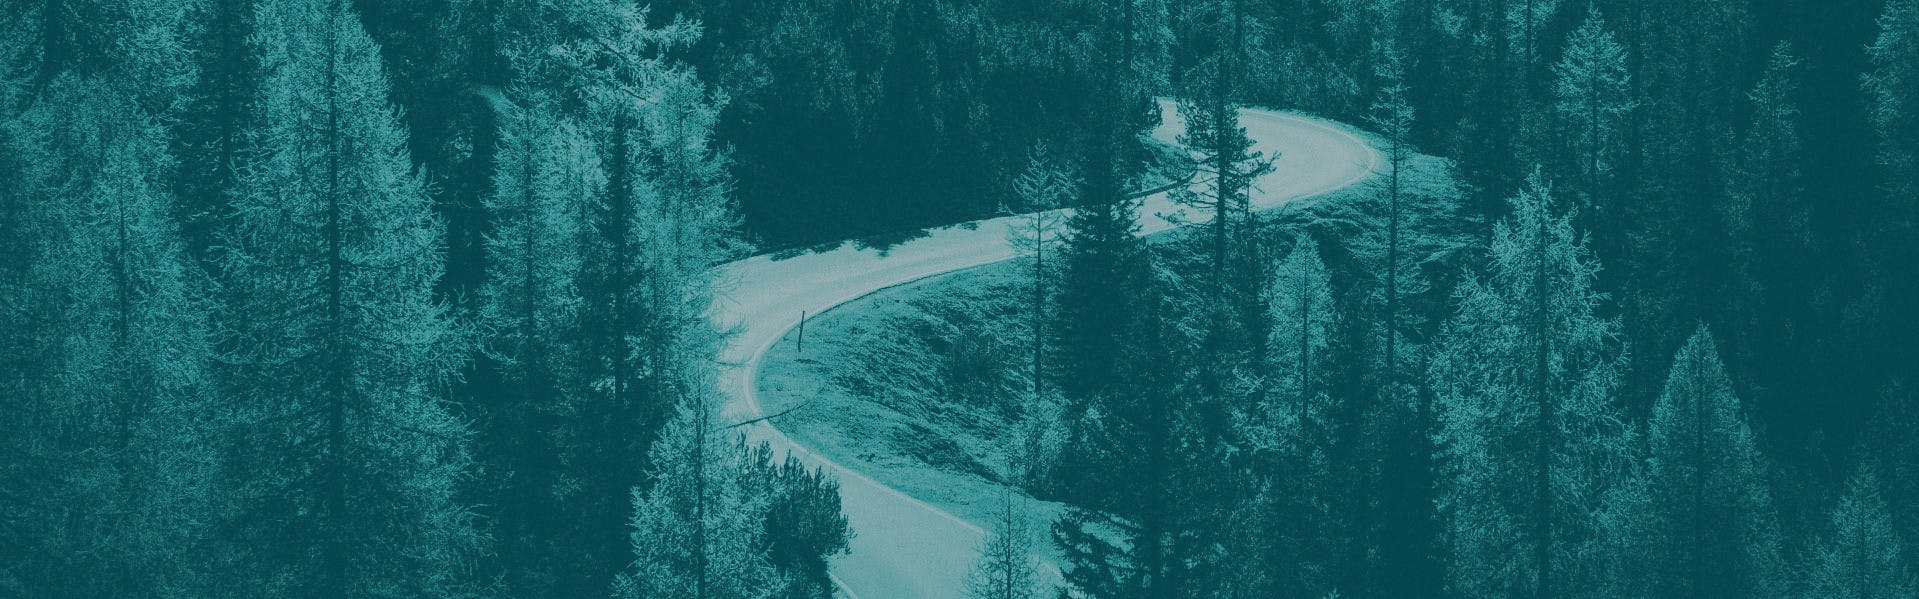 zdjęcie przedstawiającę górską drogę wśród drzew z nałożonym zielonym filtrem